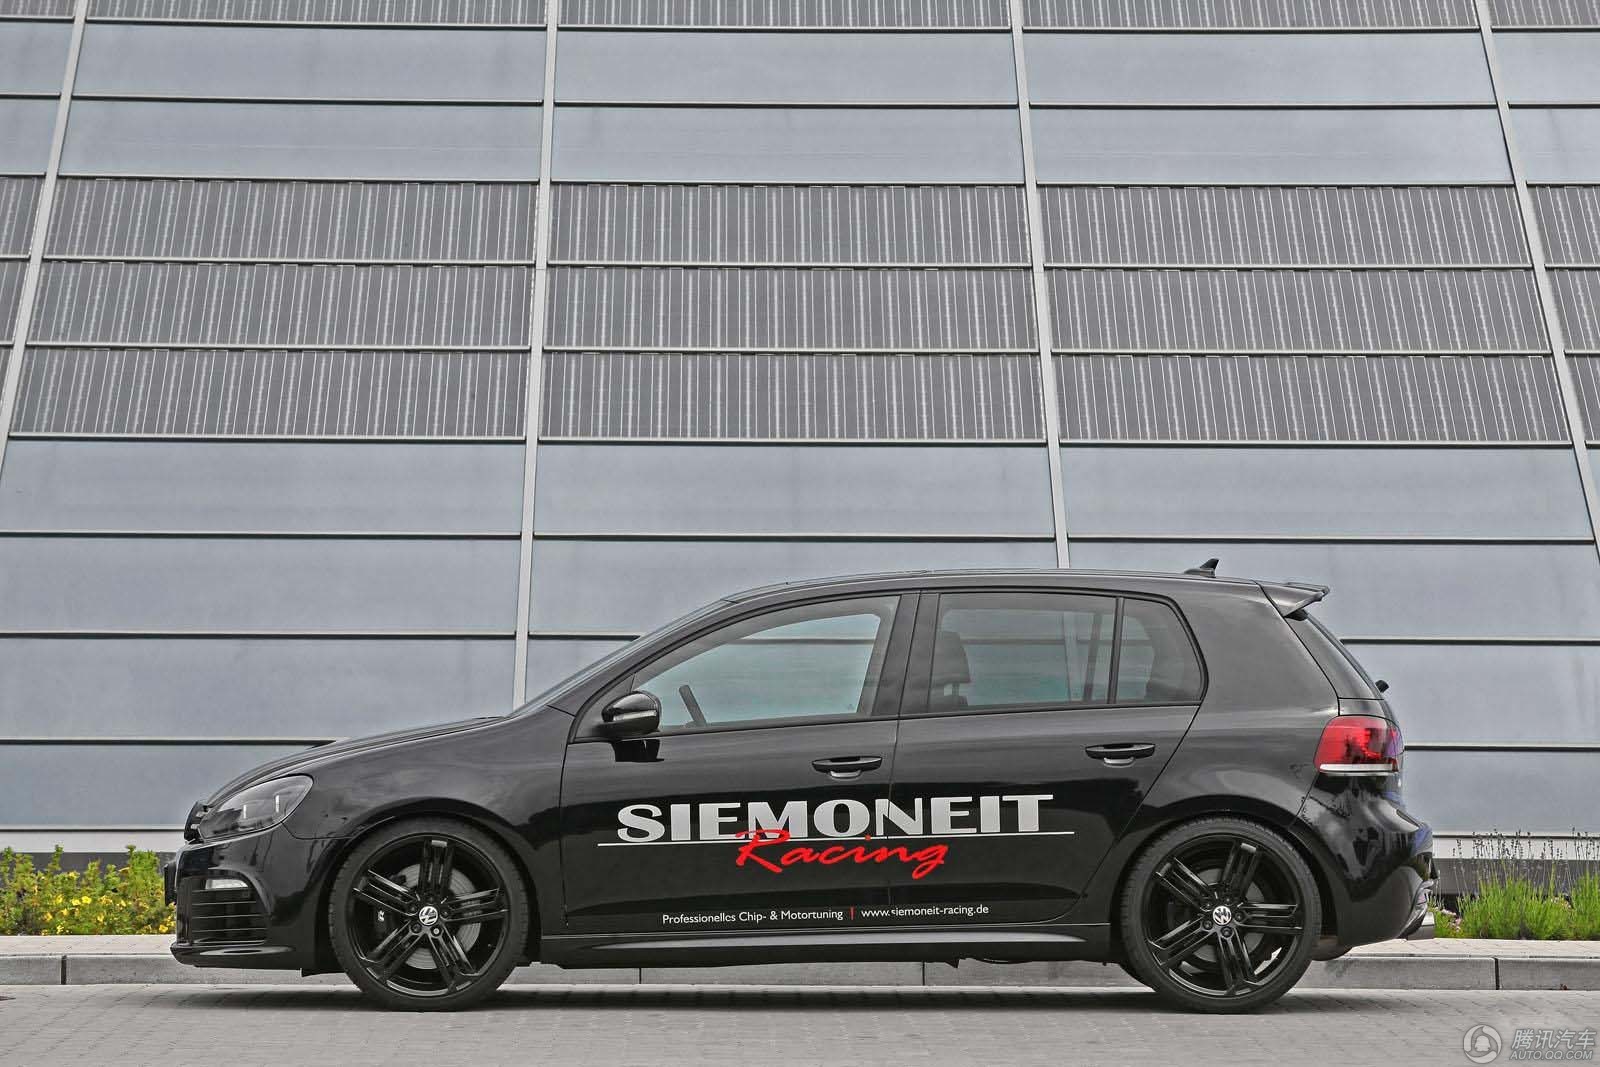 Siemoneit Racing发布530马力高尔夫R 诠释性能小钢炮854 / 作者:9527 / 帖子ID:1314